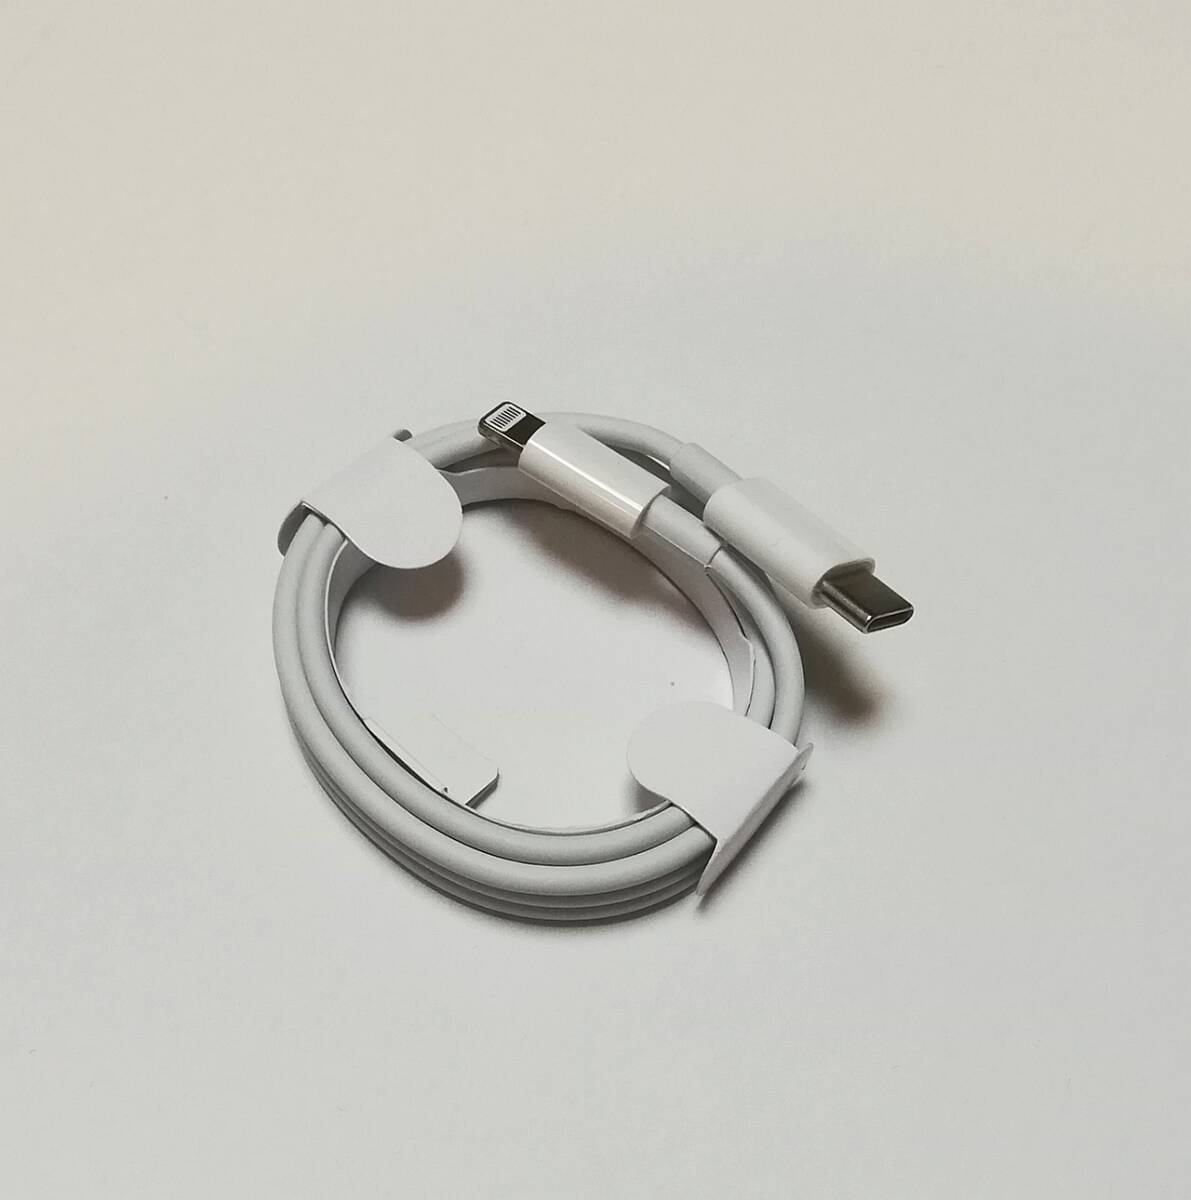 ... зарядное устройство   тип C  light ... кабель  1m  1шт.   iPhone g